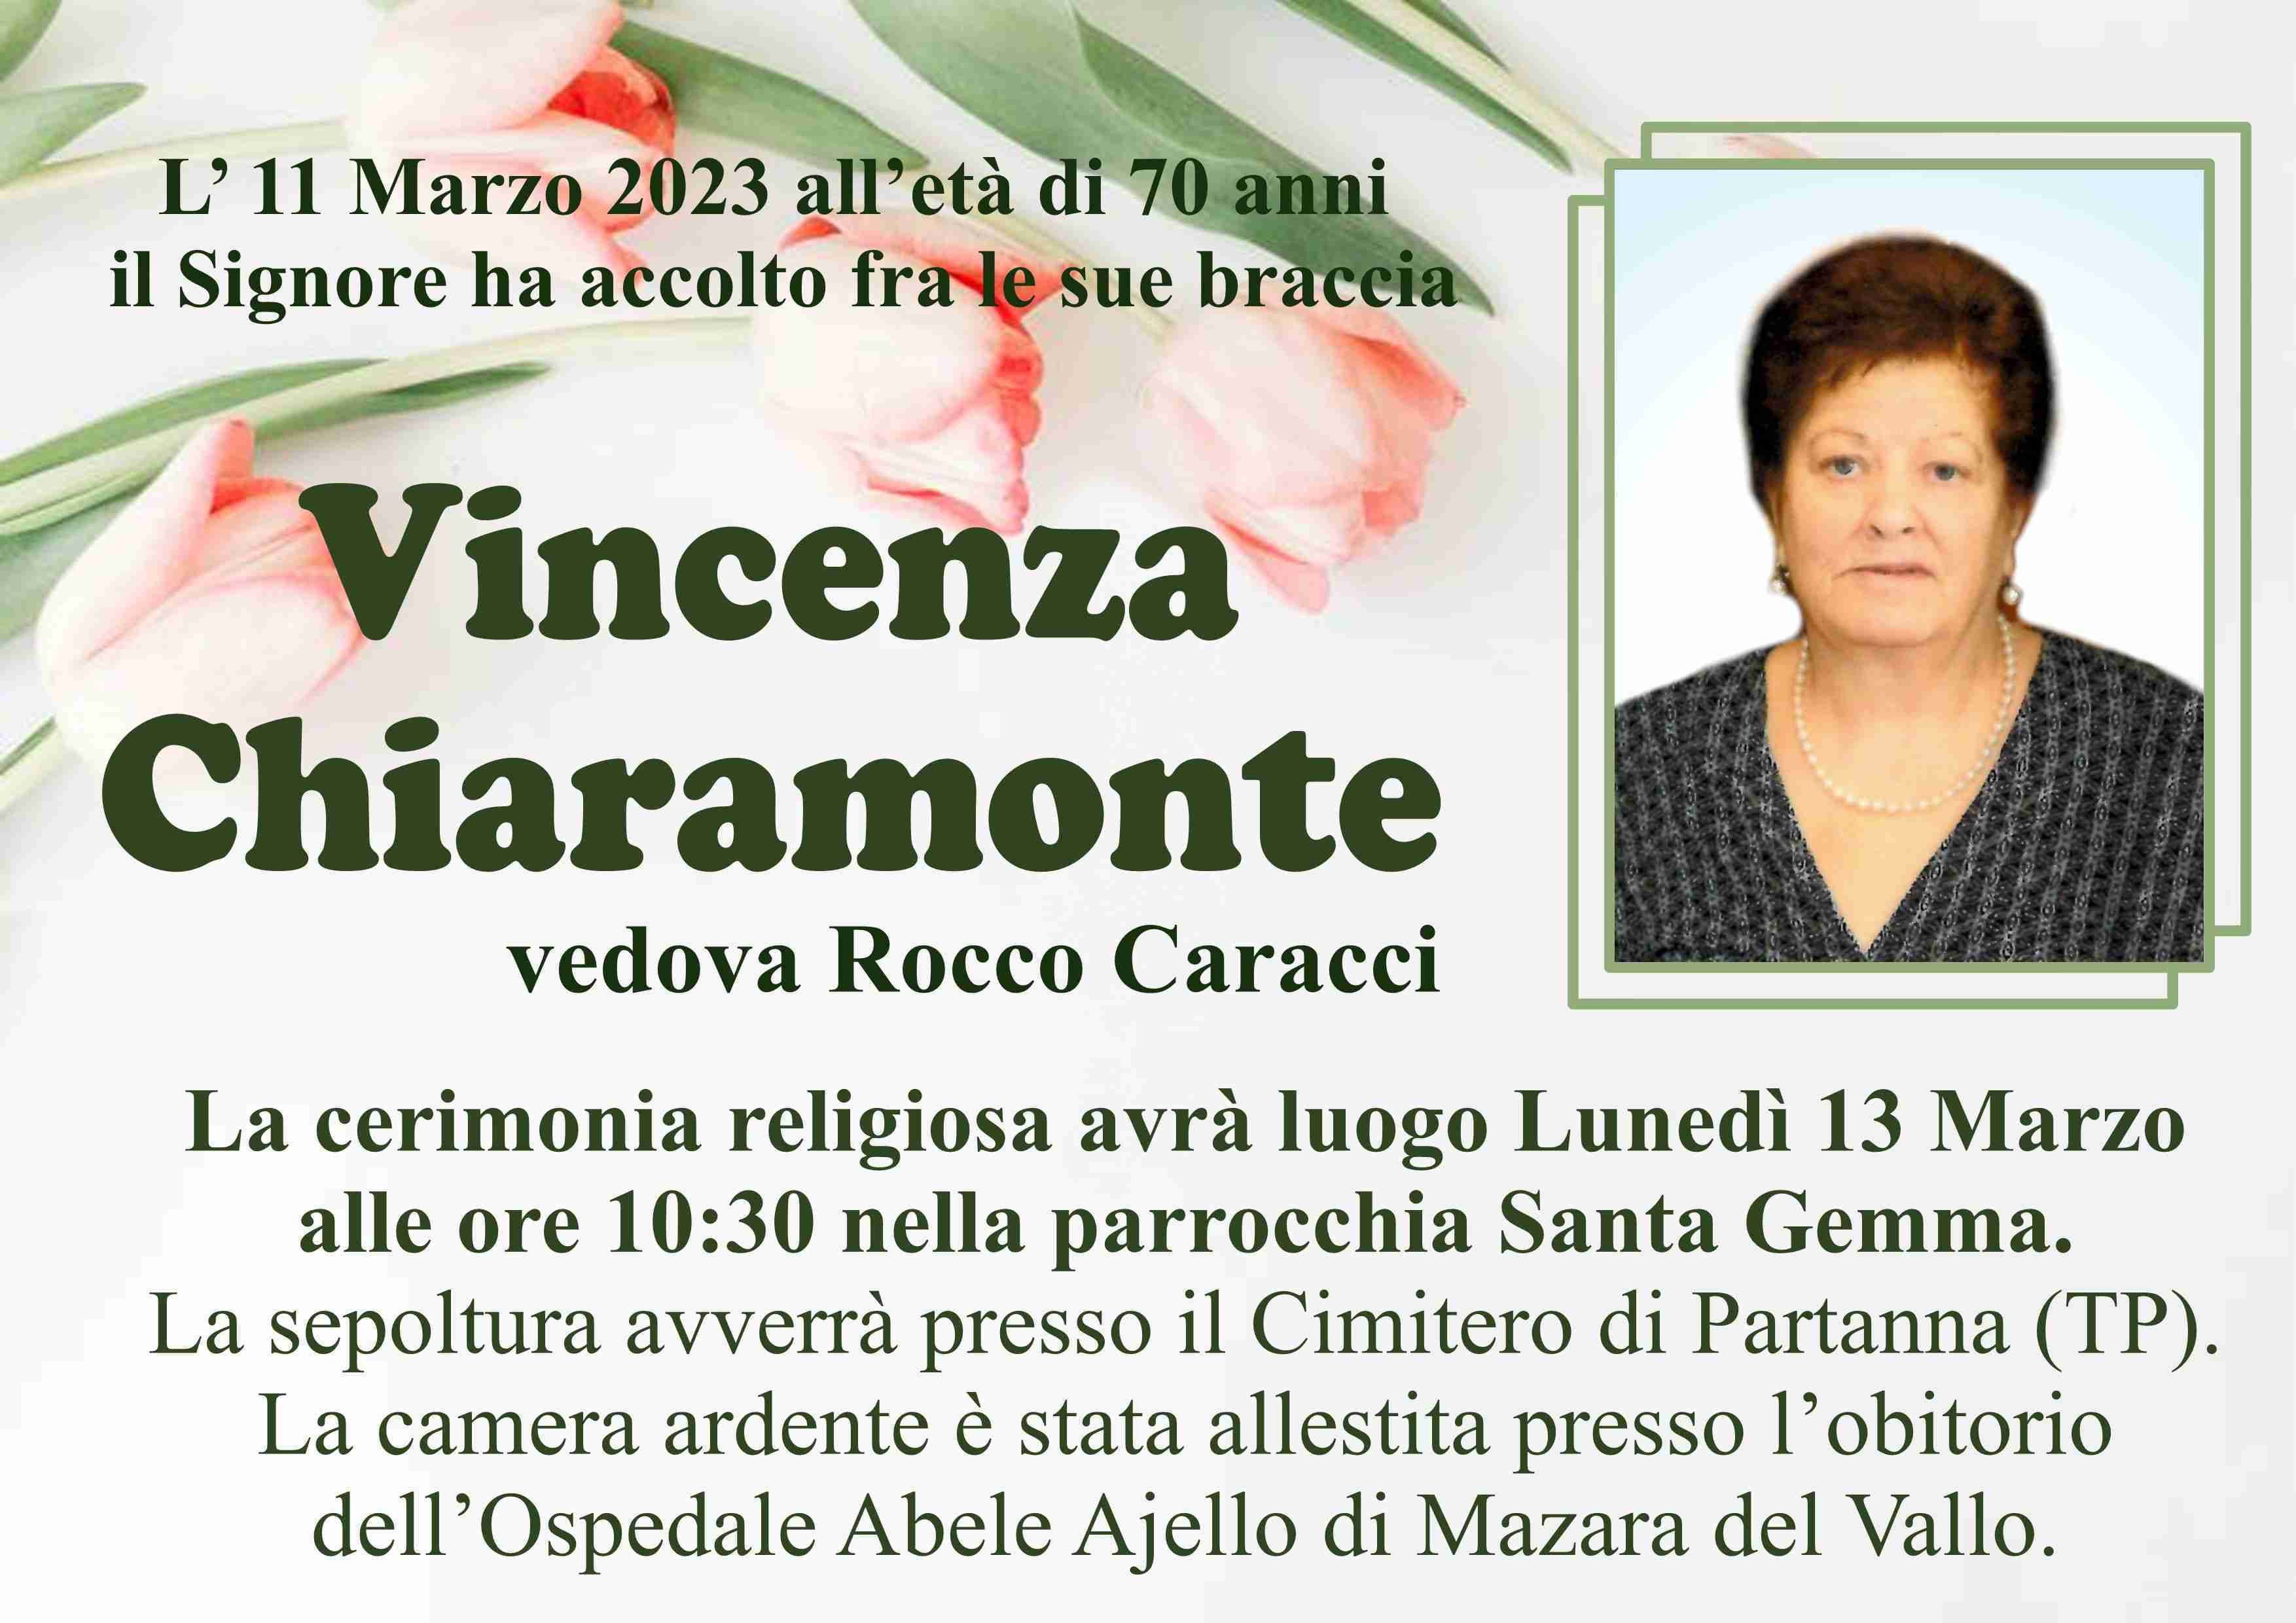 Vincenza Chiaramonte